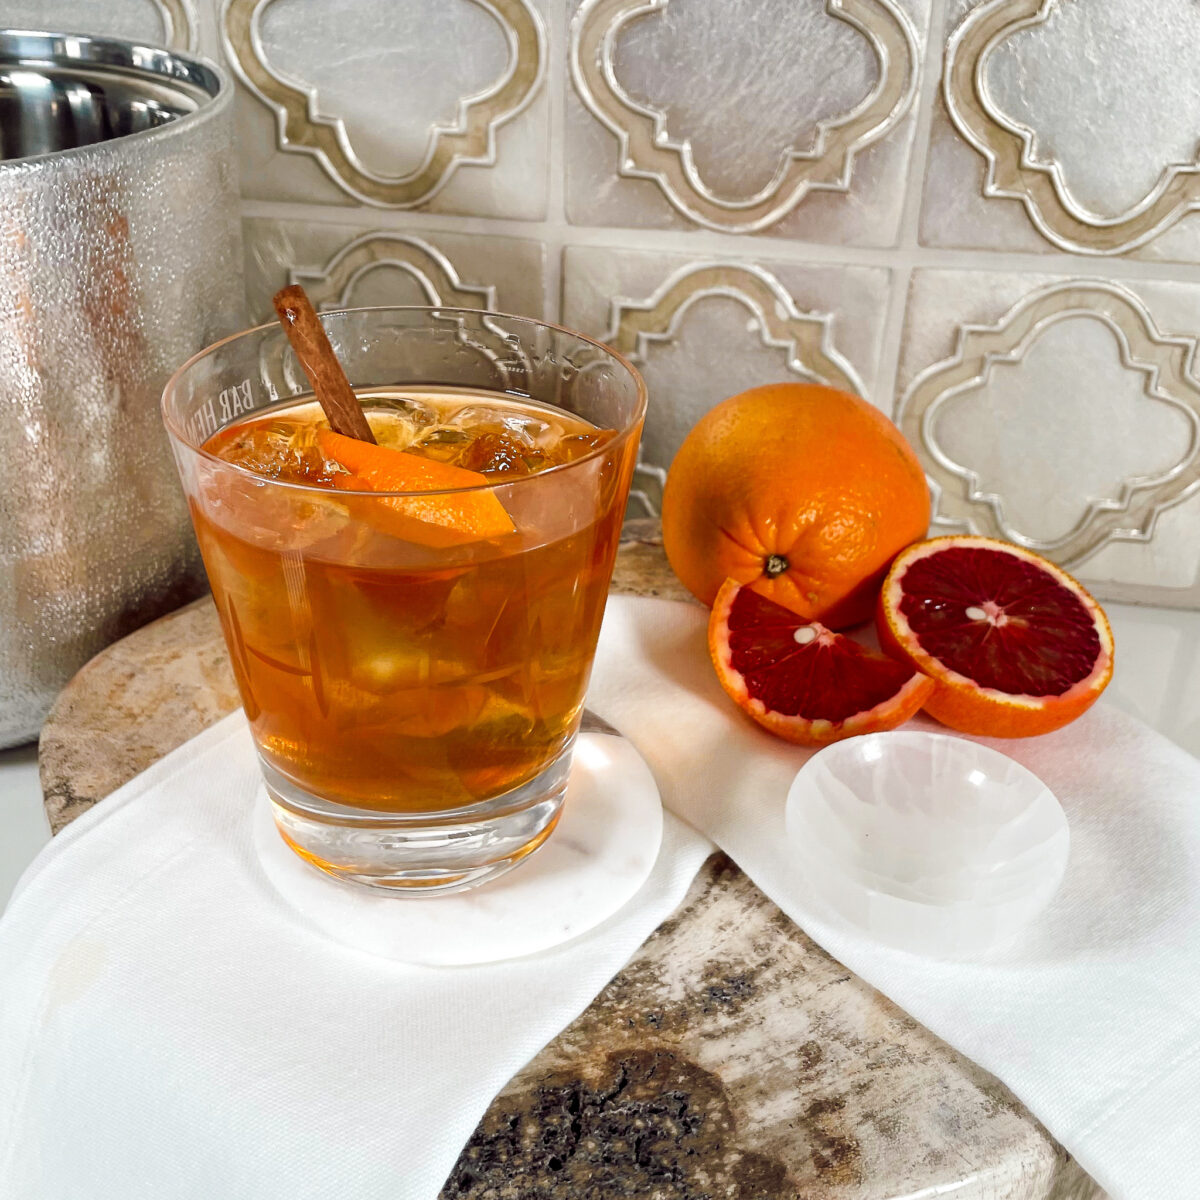 Pumpkin Spice drink with blood oranges